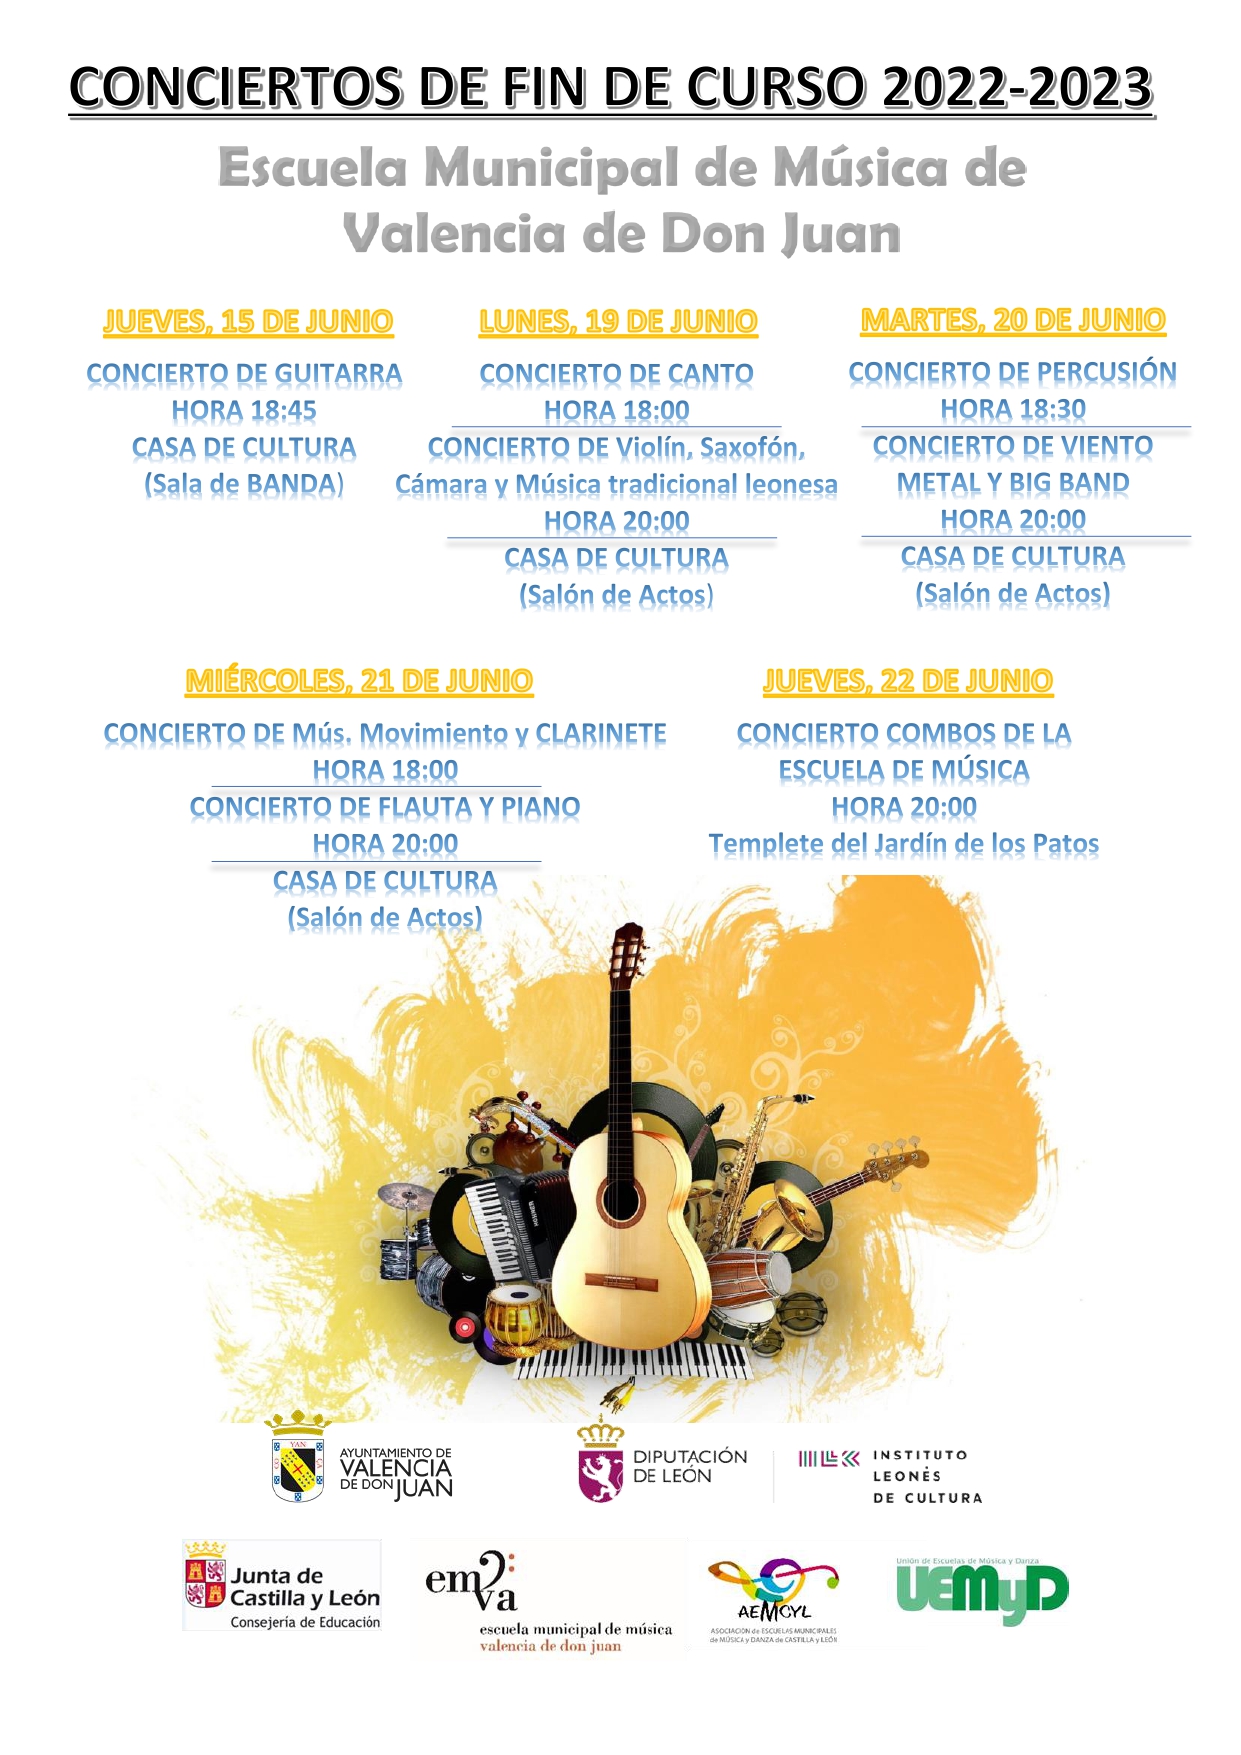 Conciertos de Fin de Curso 2022-2023 Escuela Municipal de Música de Valencia de Don Juan